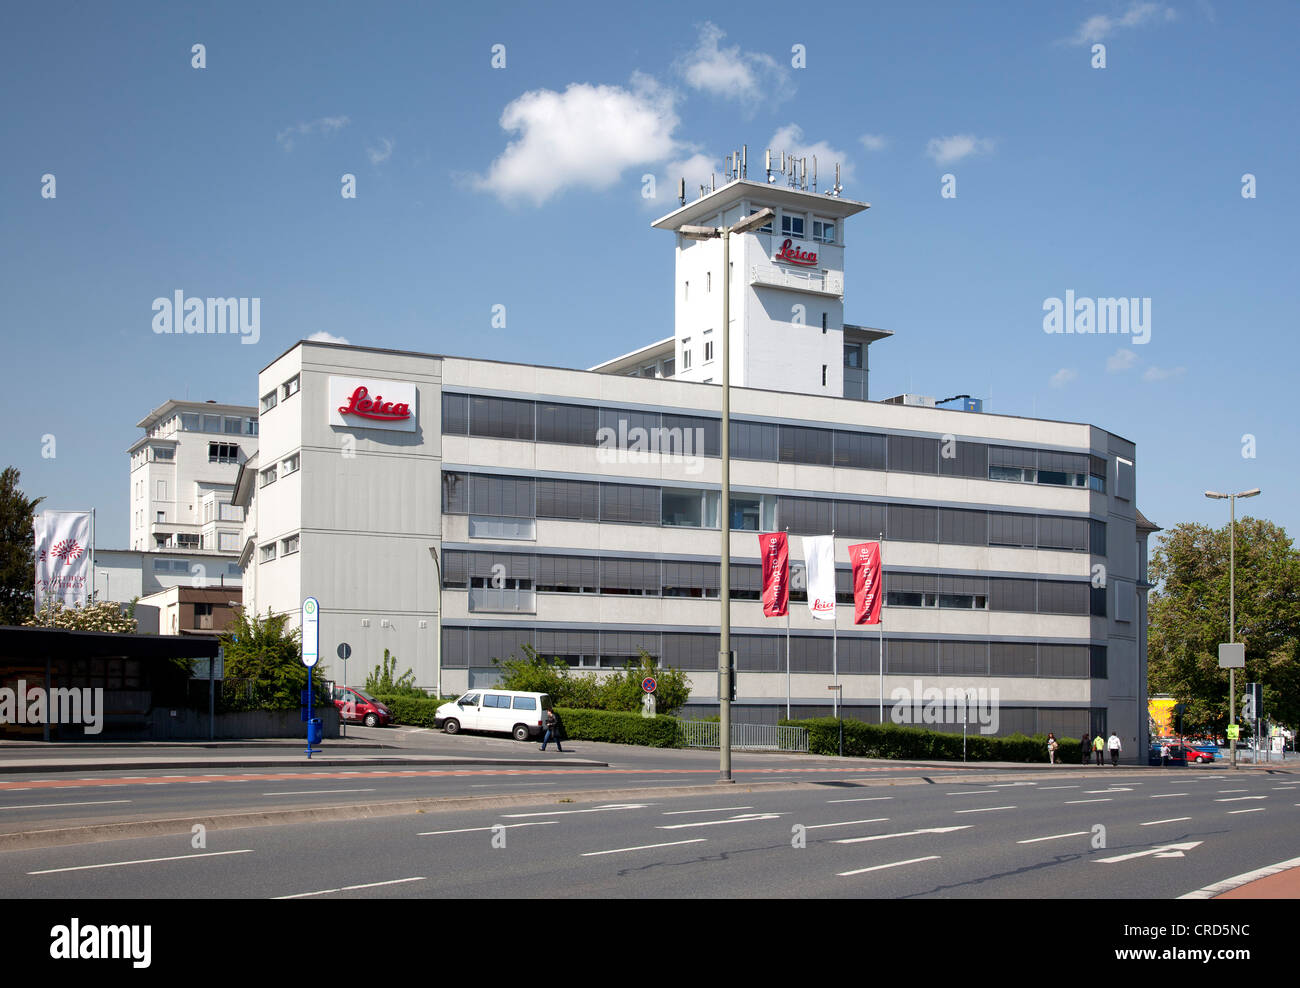 Produktions- und Verwaltungsgebäude, Leica Microsystems, Wetzlar, Hessen, Deutschland, Europa, PublicGround Stockfoto